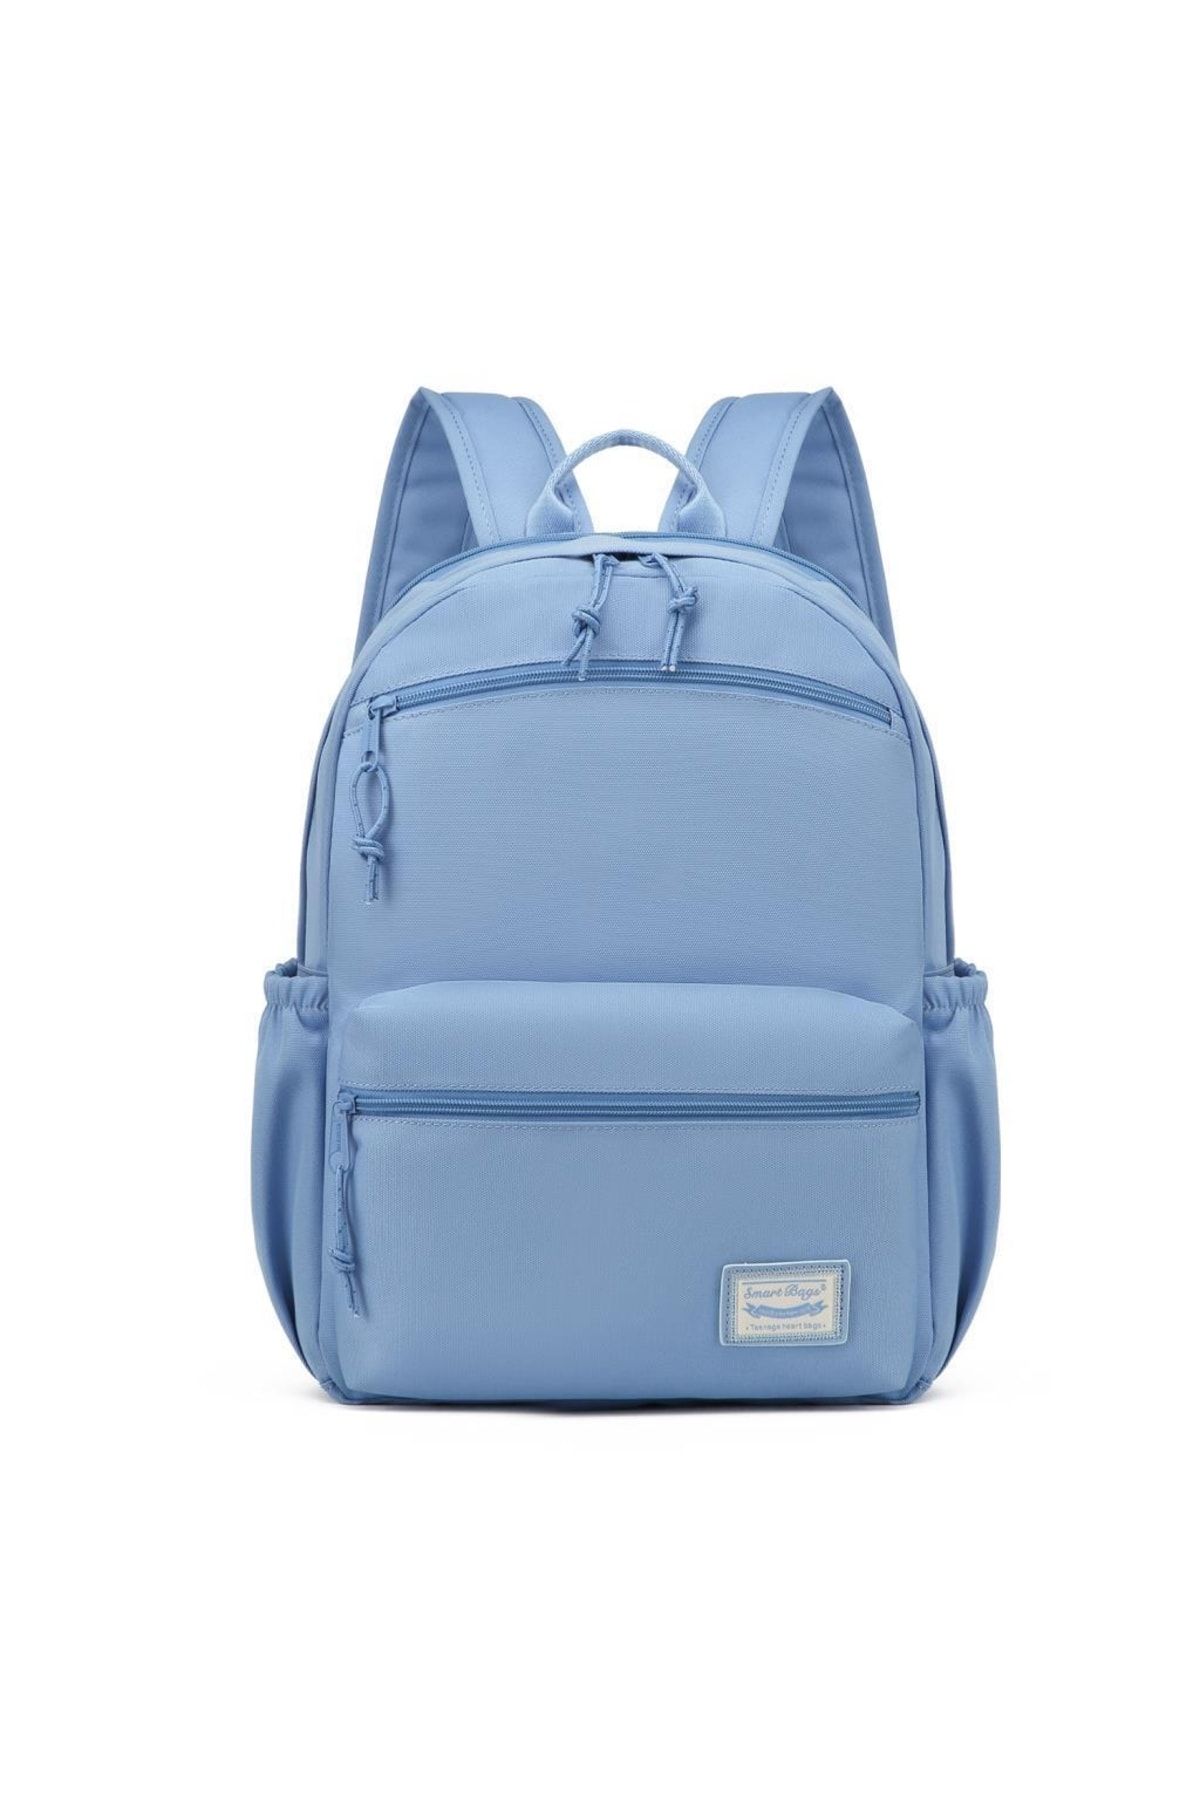 Smart Bags Sırt Çantası Okul Boyu Laptop Gözlü 3160